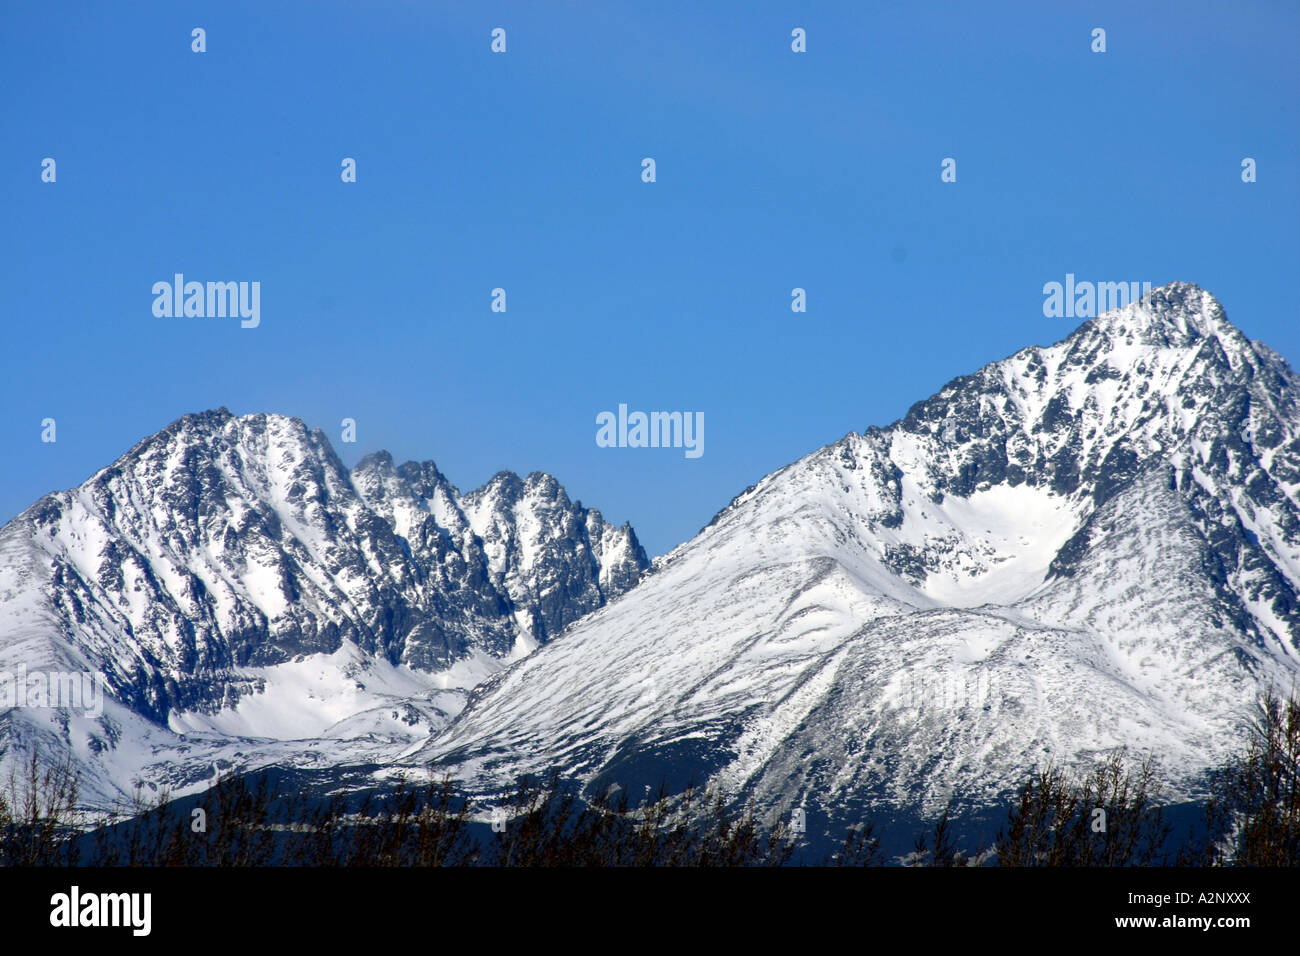 High Tatras Mountains at Poprad in Slovakia Stock Photo